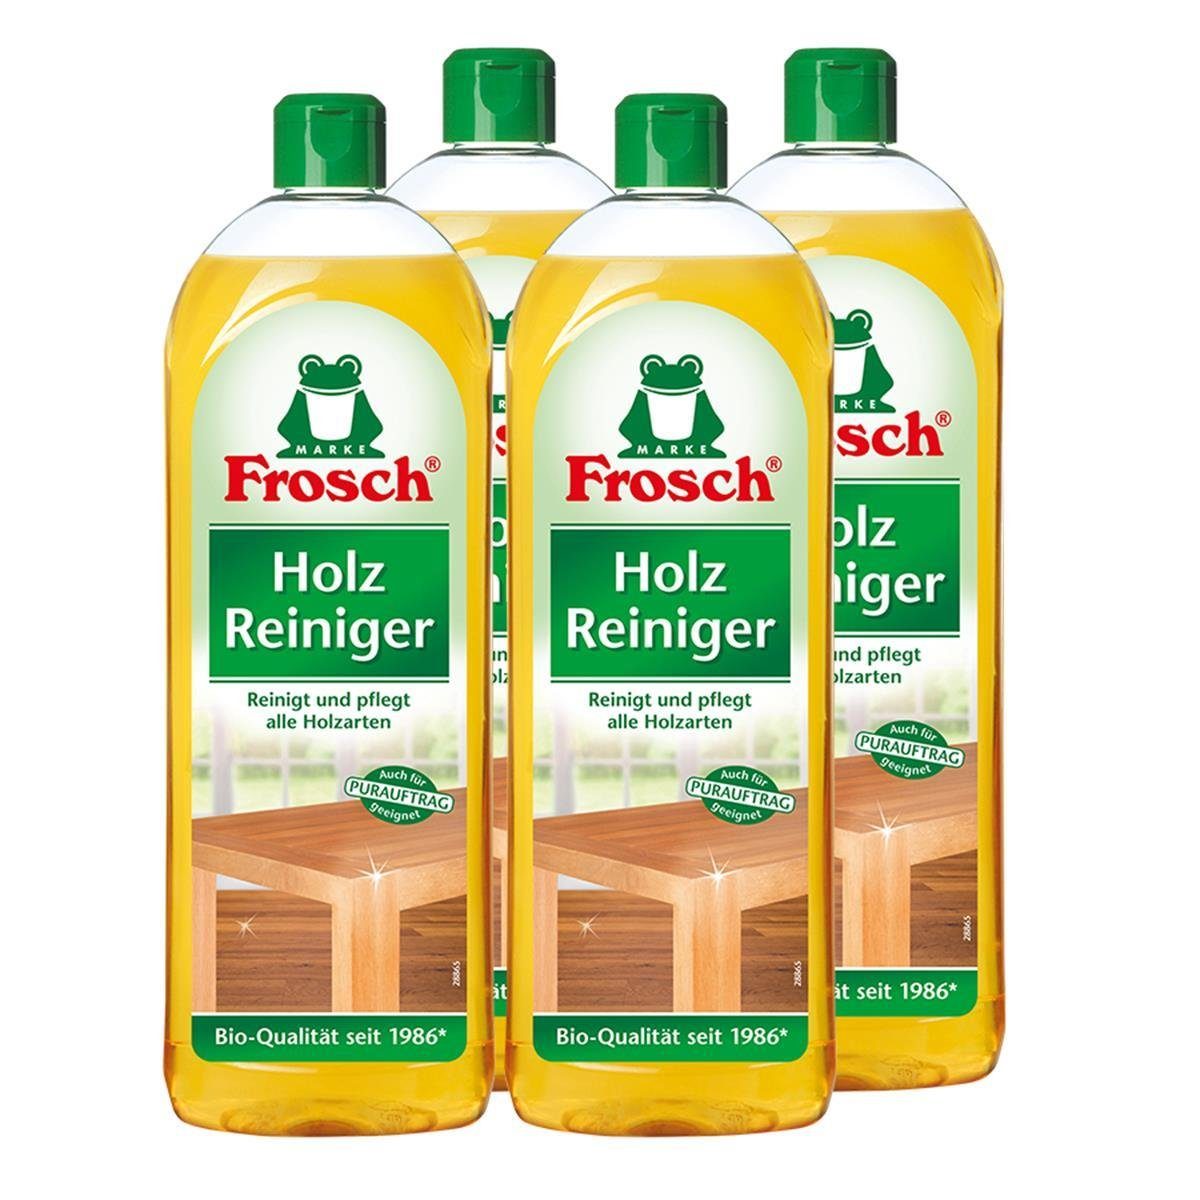 natürlichen ml Frosch 750 Holz Pflegewirkstoffen Reiniger - 4x FROSCH Spezialwaschmittel der mit